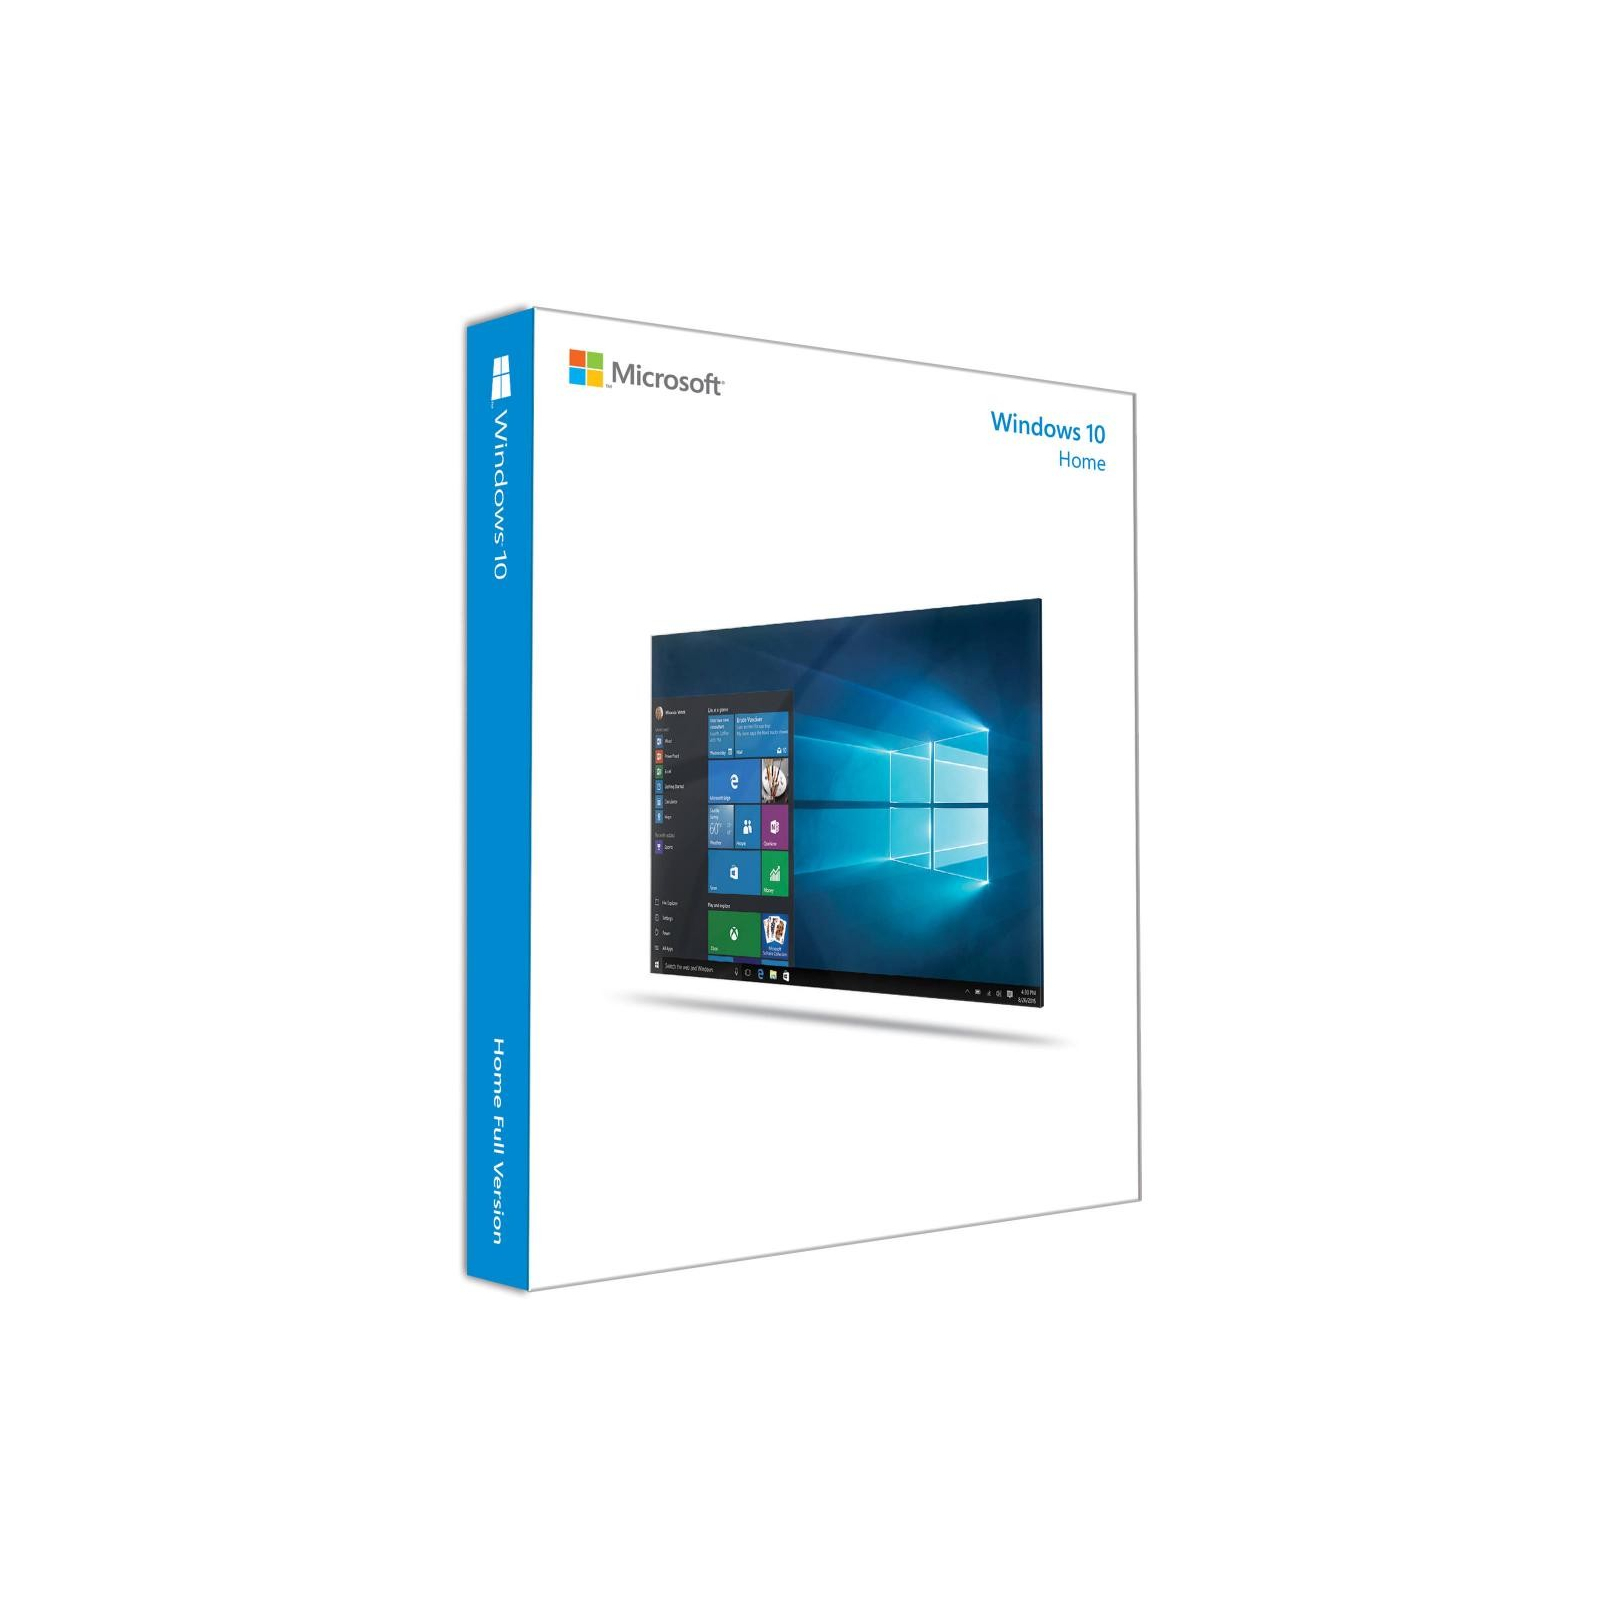 Операційна система Microsoft Windows 10 Home 32-bit/64-bit English USB (KW9-00018)